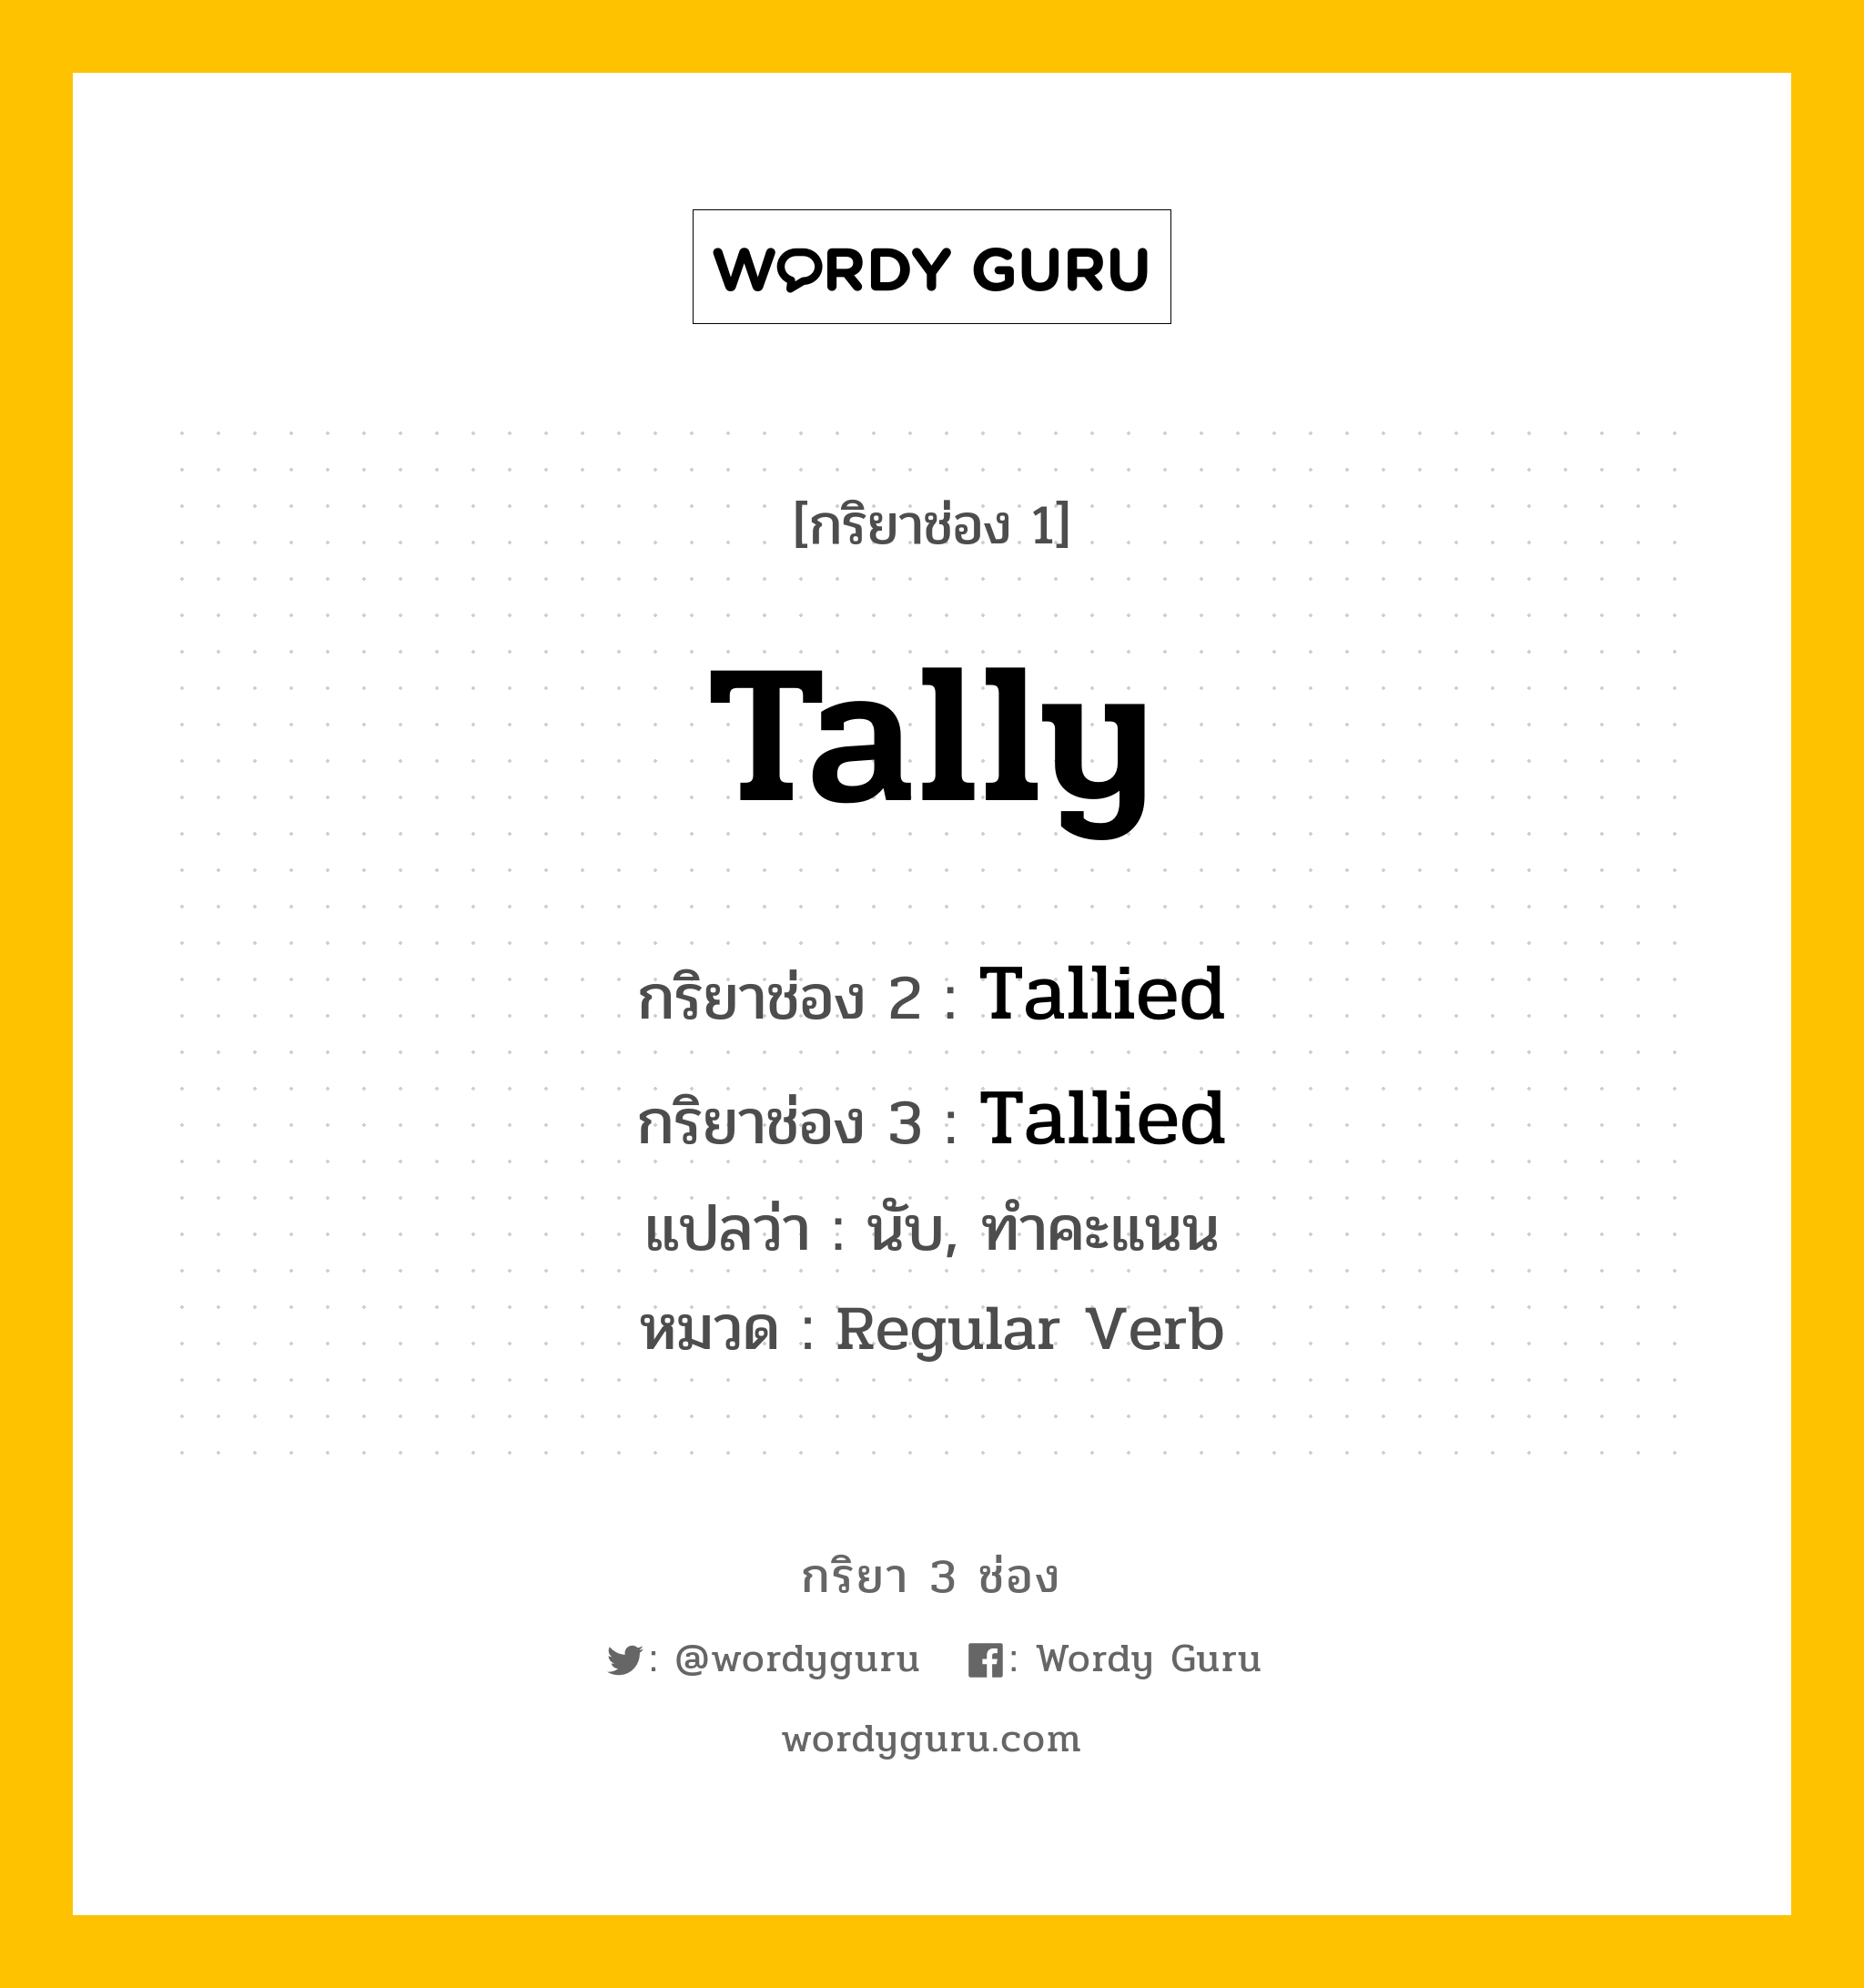 กริยา 3 ช่อง: Tally ช่อง 2 Tally ช่อง 3 คืออะไร, กริยาช่อง 1 Tally กริยาช่อง 2 Tallied กริยาช่อง 3 Tallied แปลว่า นับ, ทำคะแนน หมวด Regular Verb หมวด Regular Verb